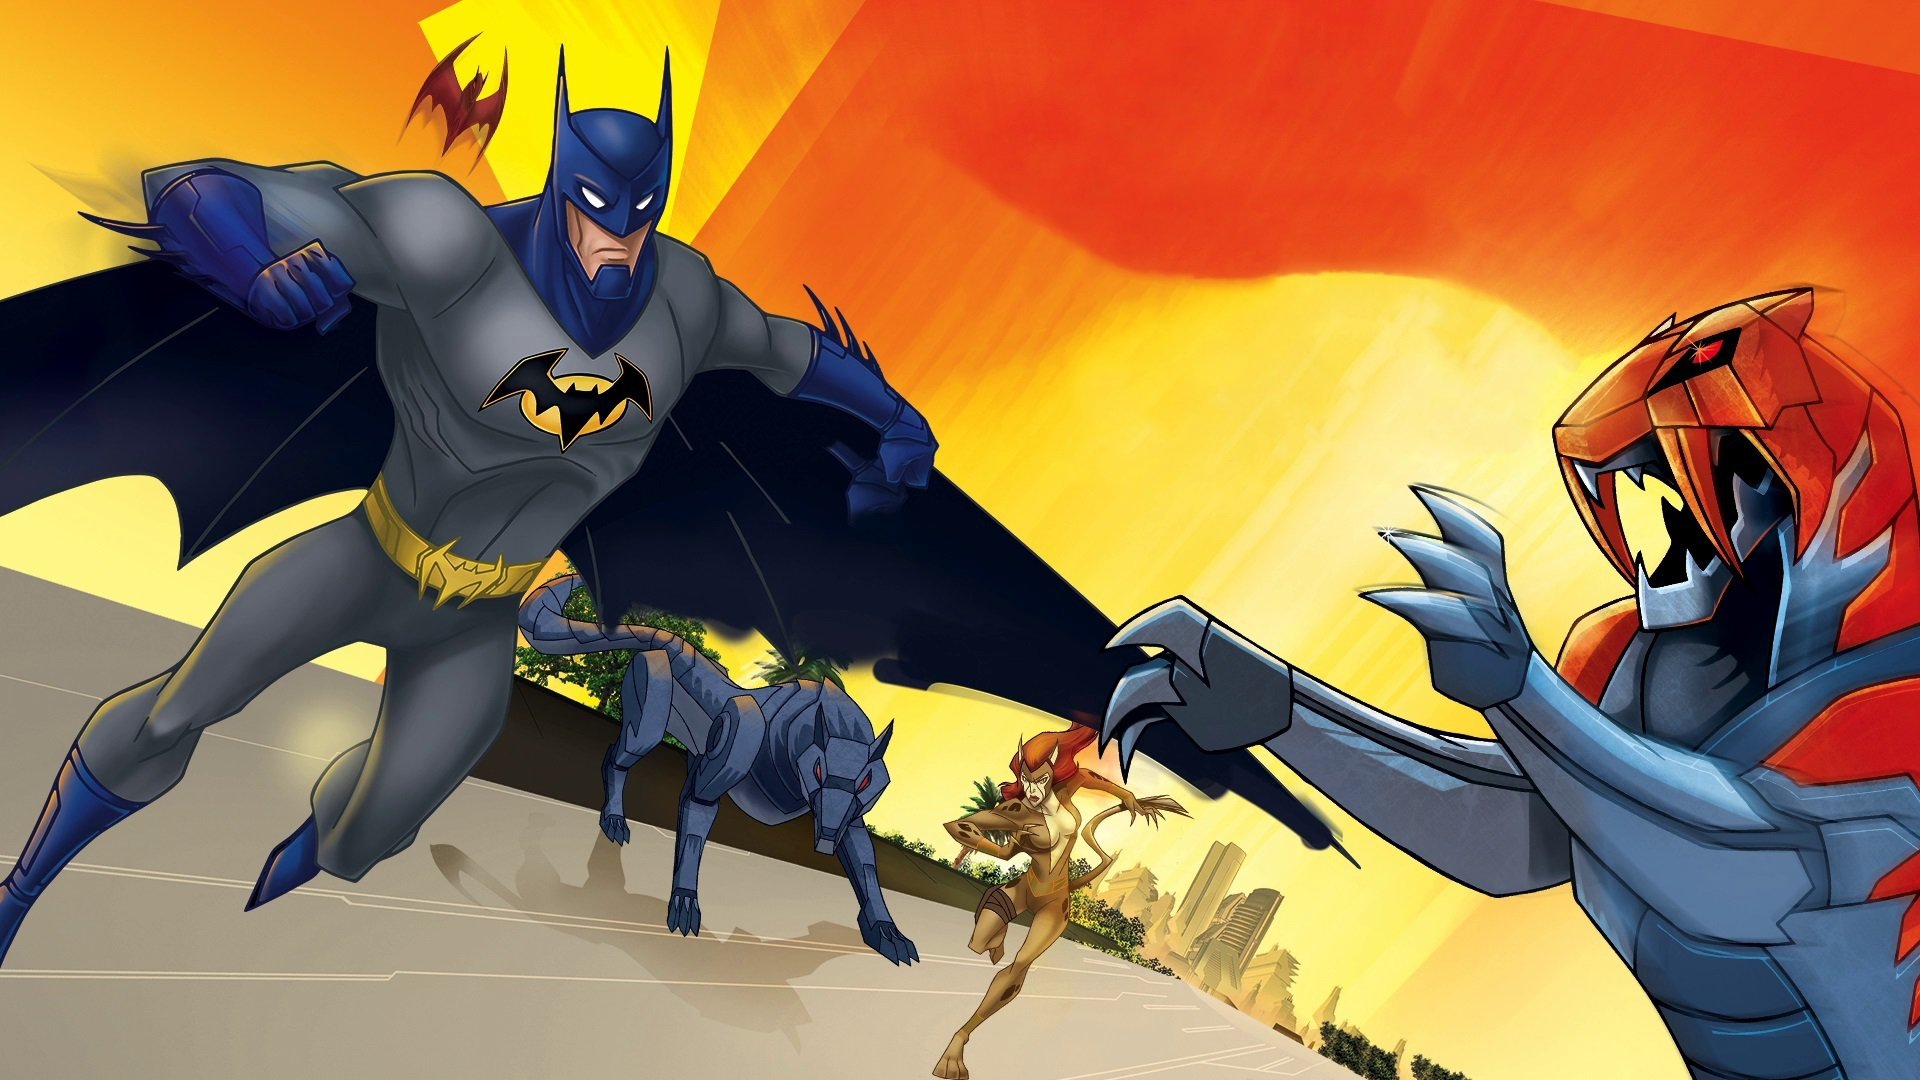 Los mejores fondos de pantalla de Batman Unlimited: Instinto Animal para la pantalla del teléfono